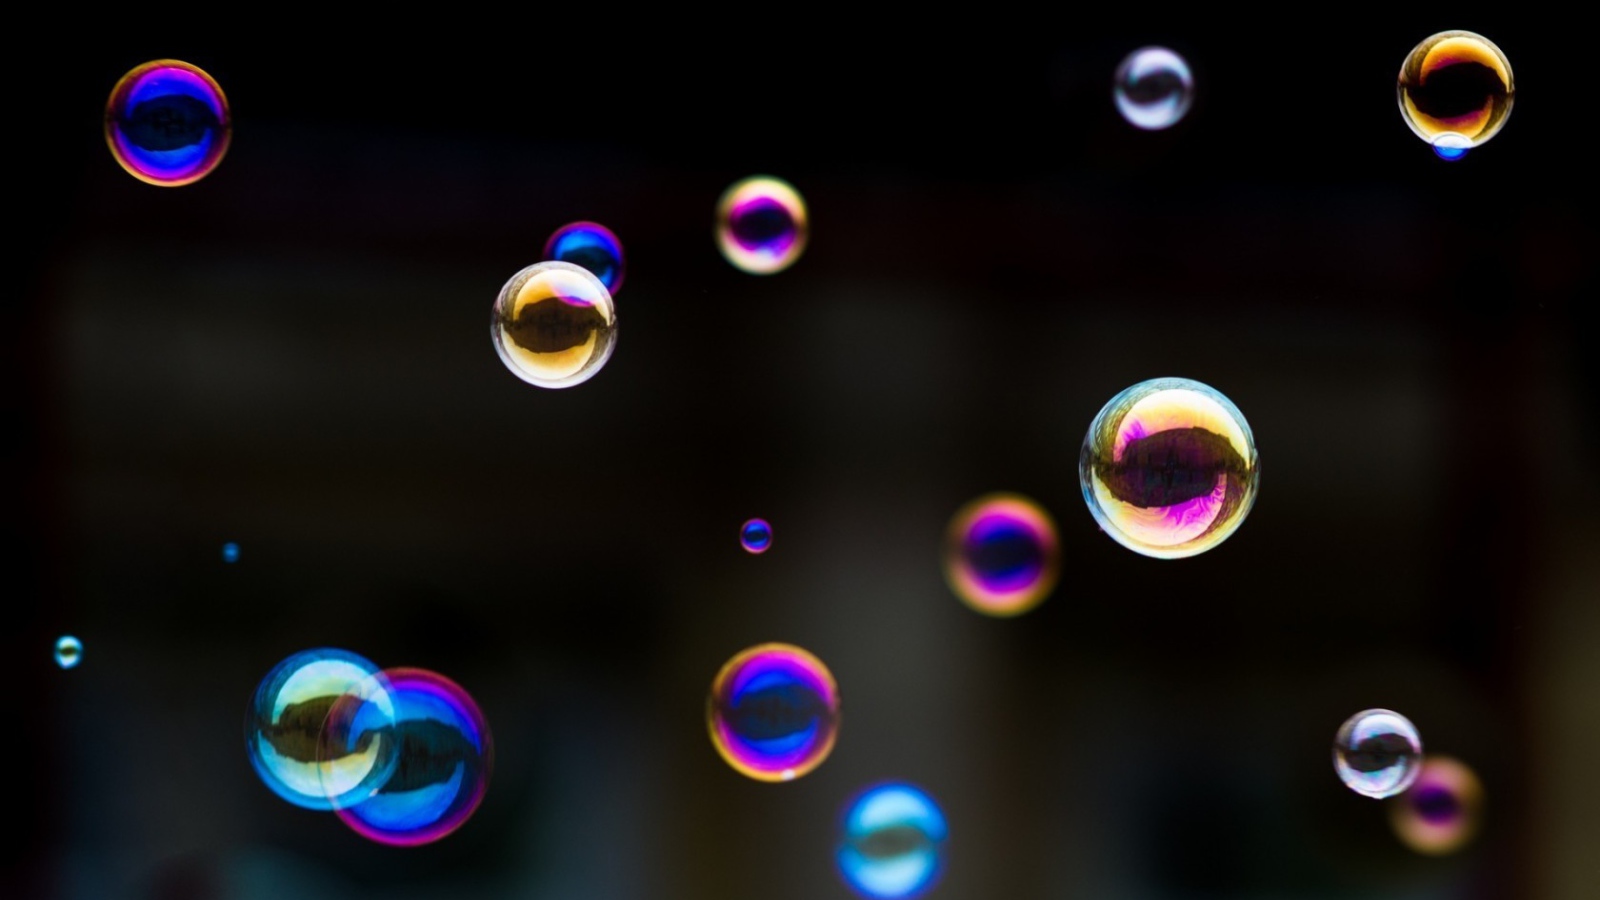 Разноцветные мыльные пузыри